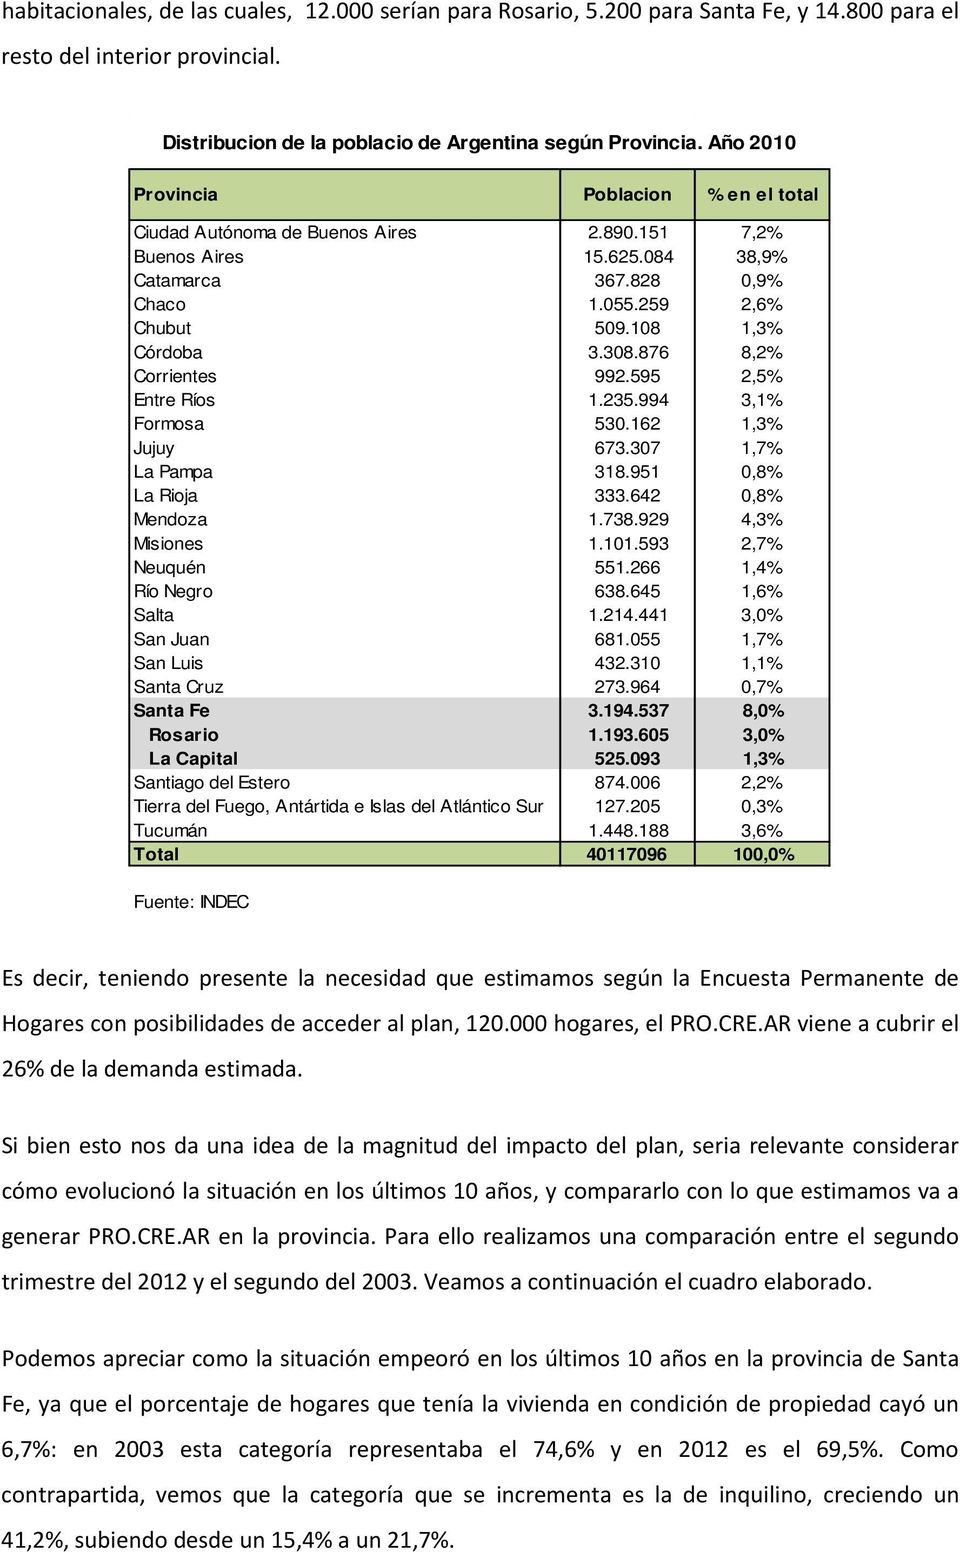 876 8,2% Corrientes 992.595 2,5% Entre Ríos 1.235.994 3,1% Formosa 530.162 1,3% Jujuy 673.307 1,7% La Pampa 318.951 0,8% La Rioja 333.642 0,8% Mendoza 1.738.929 4,3% Misiones 1.101.